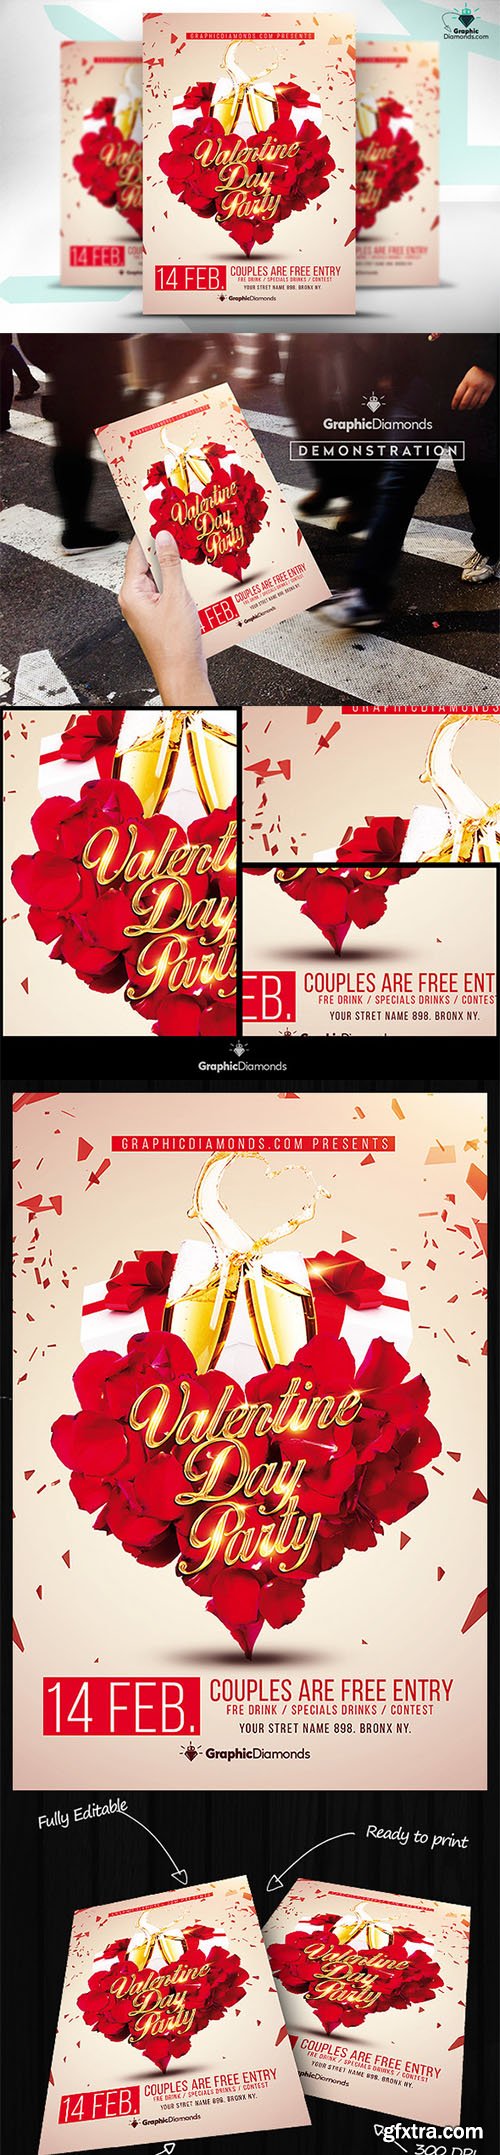 CreativeMarket - Valentine Day Flyer PSD 469151